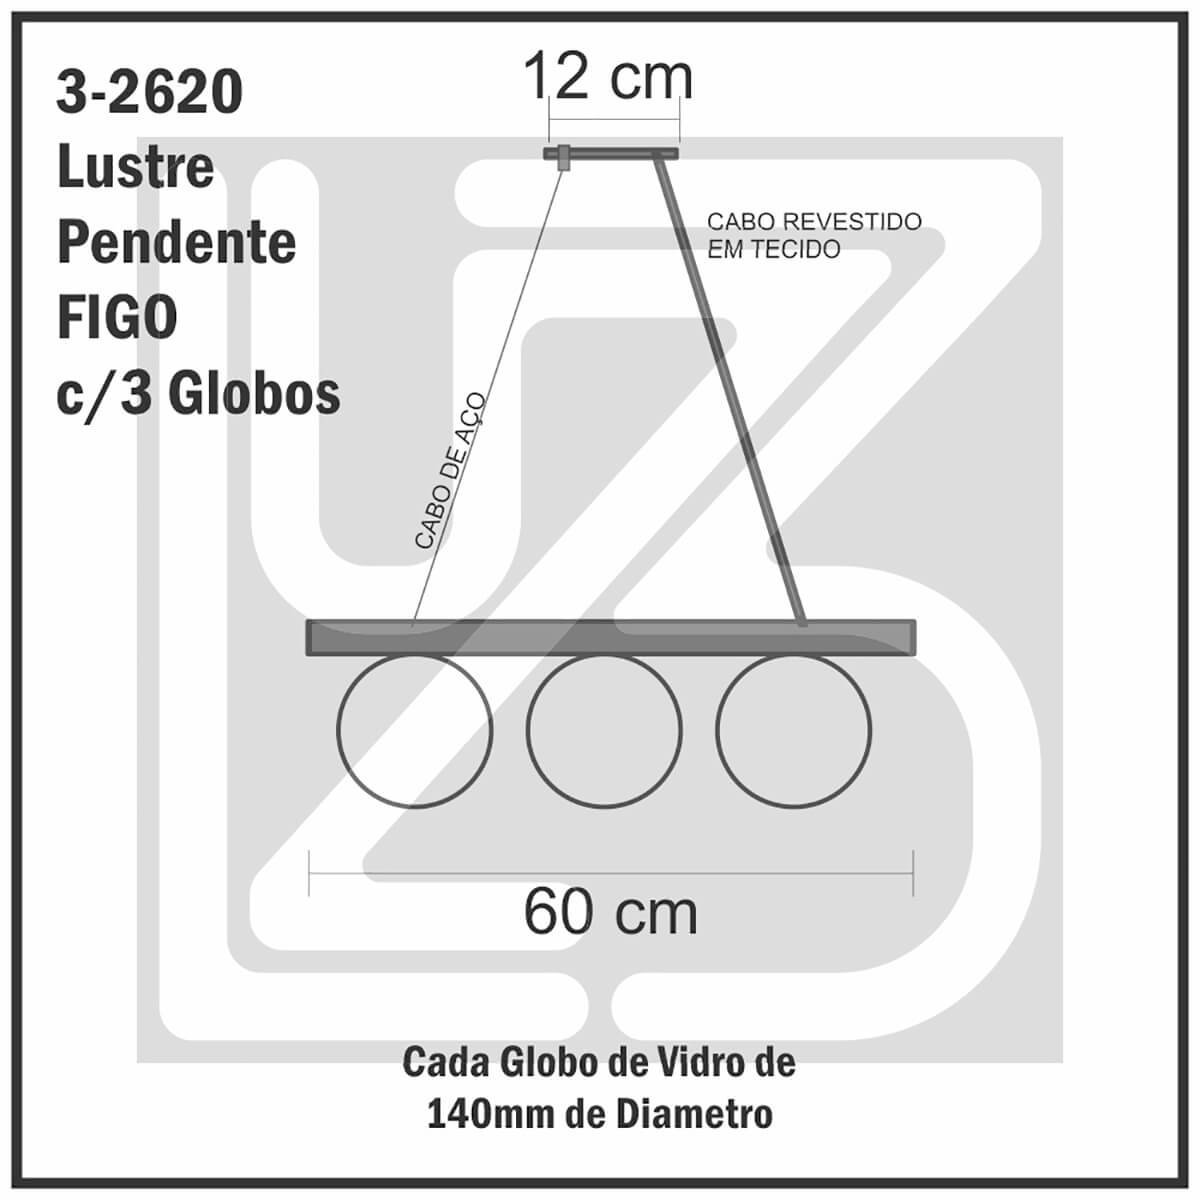 Lustre Pendente Figo PRETO - 3 Globos Esfera de Vidro Fumê - 3-2620-3-FU - 6